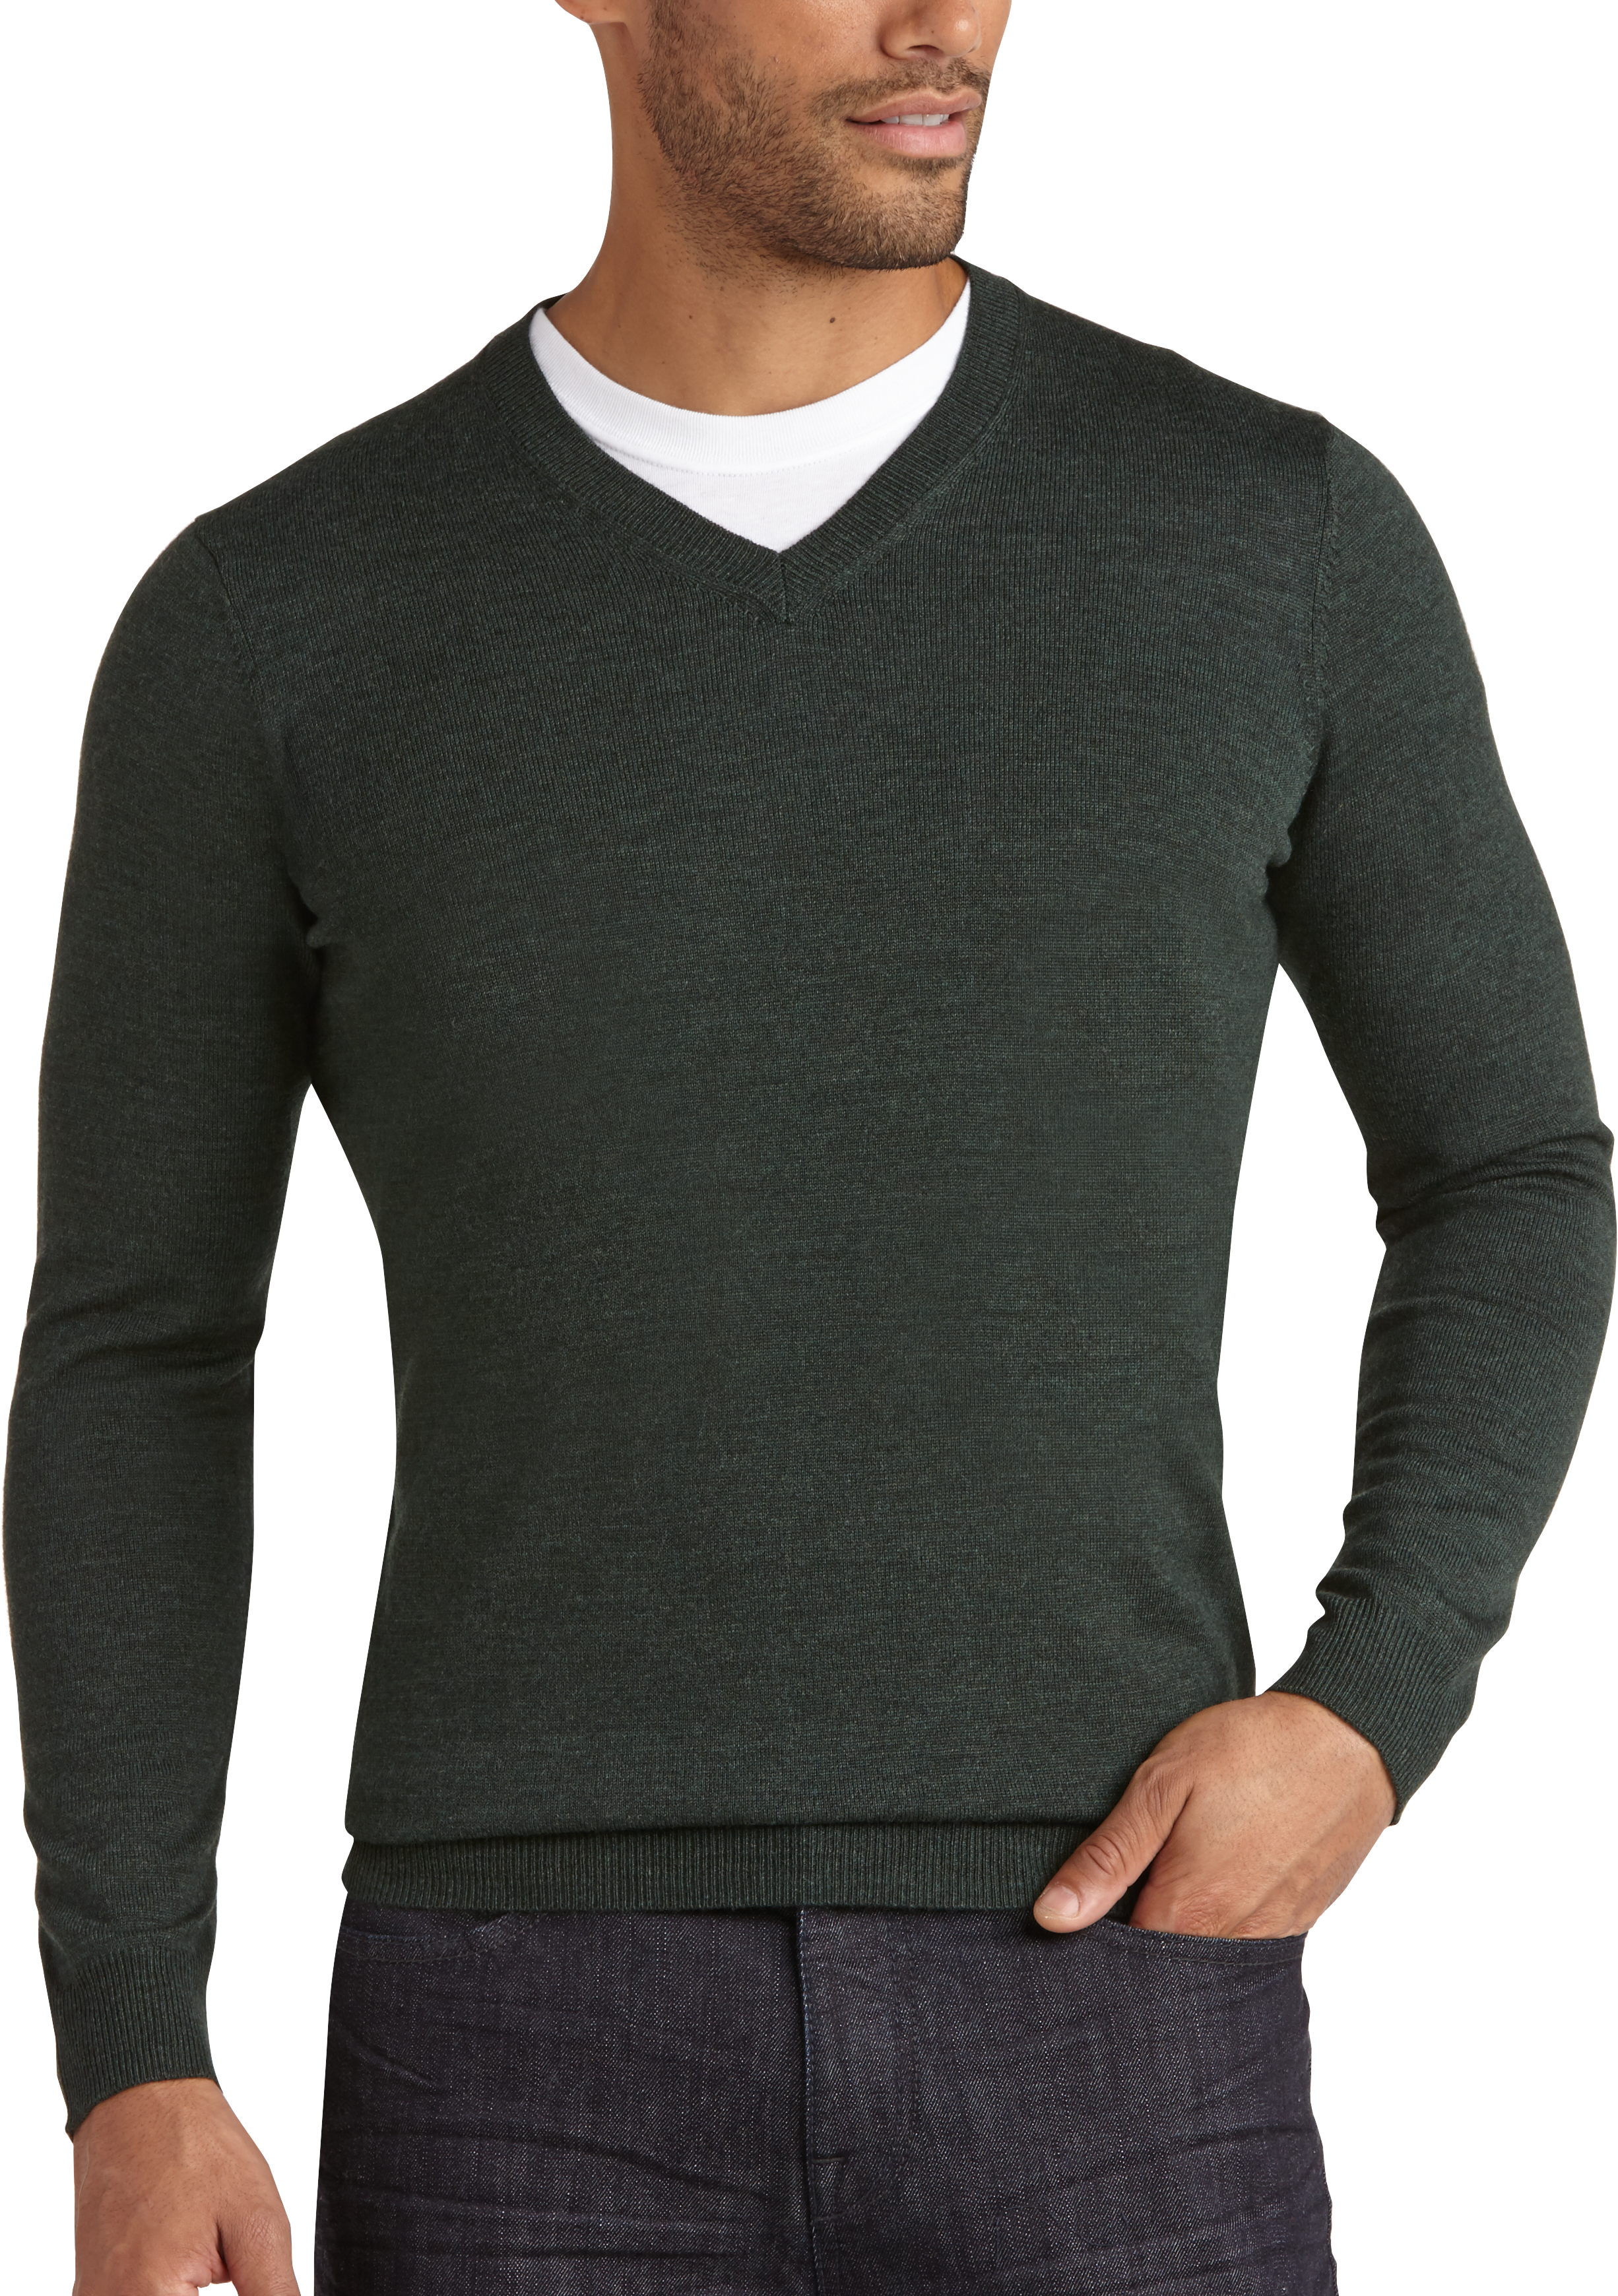 Joseph Abboud Dark Green V-Neck Merino Sweater - Men's Sale | Men's ...